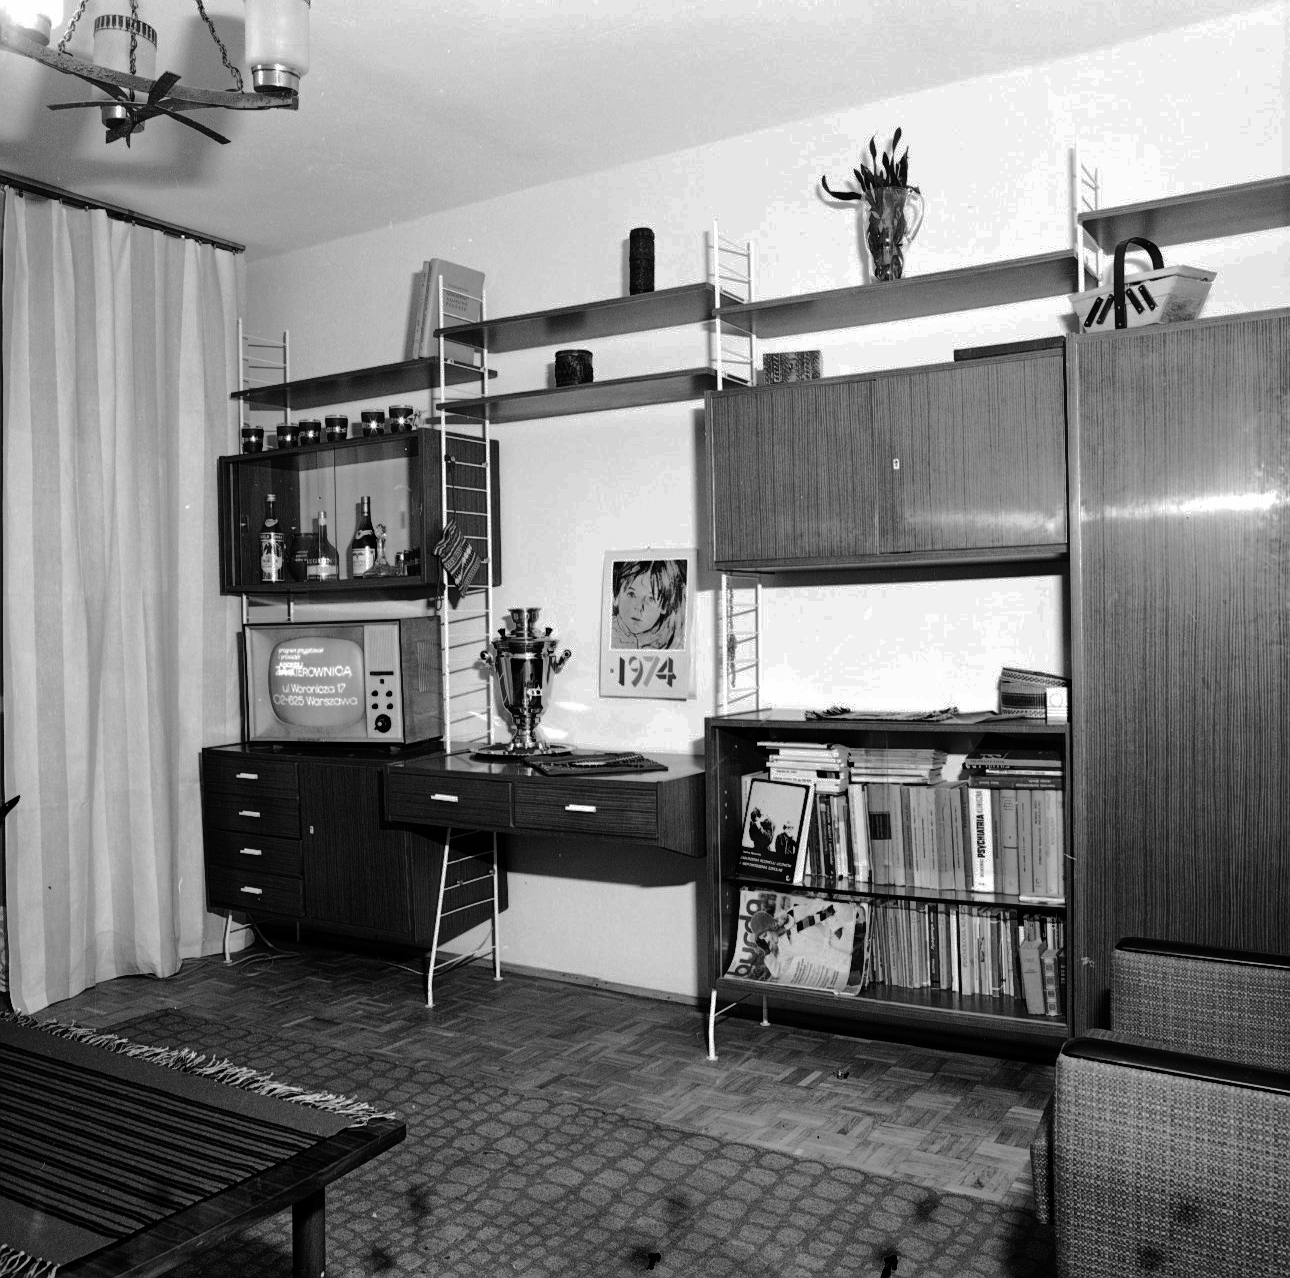 Wyposażenie wnętrz mieszkalnych na osiedlach wielkopłytowych, Kraków-Nowa Huta 1973-74 (źródło: materiały prasowe organizatora)